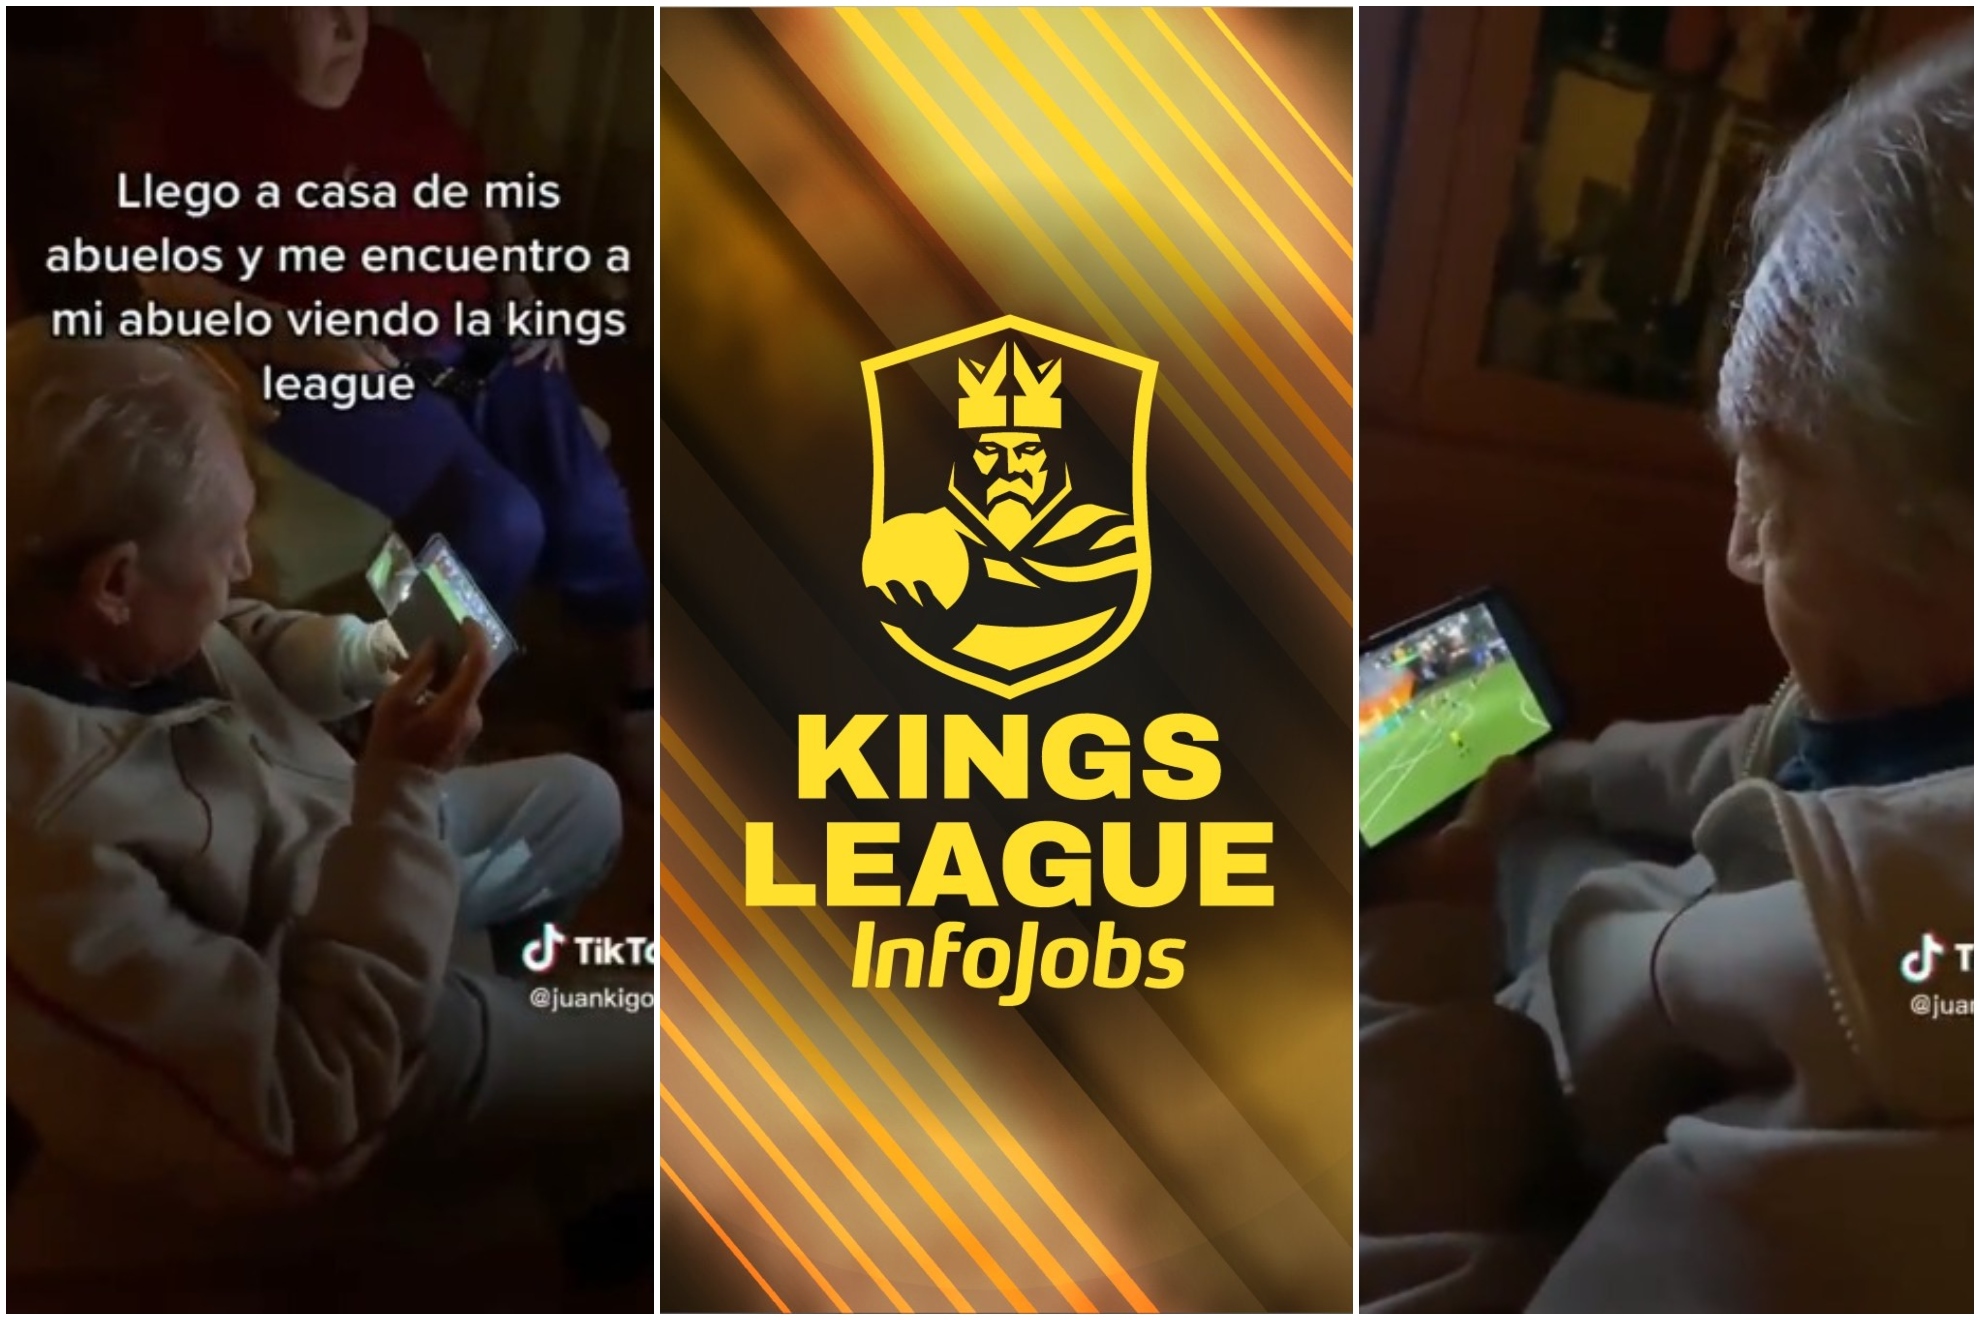 La Kings League InfoJobs llega también a los abuelos: "Me gustaría conocer en directo a Piqué"